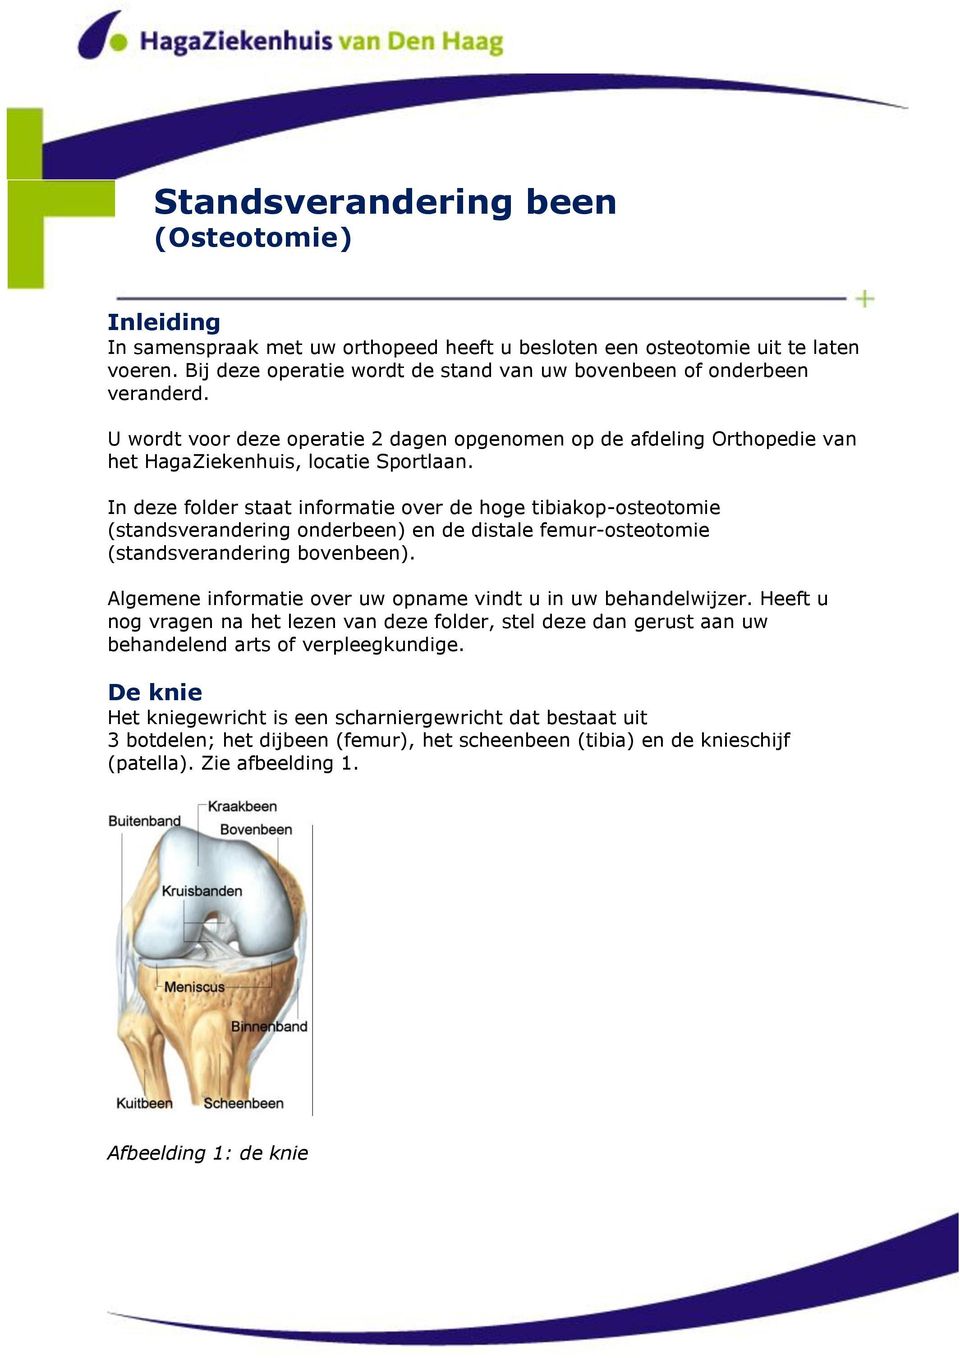 In deze folder staat informatie over de hoge tibiakop-osteotomie (standsverandering onderbeen) en de distale femur-osteotomie (standsverandering bovenbeen).